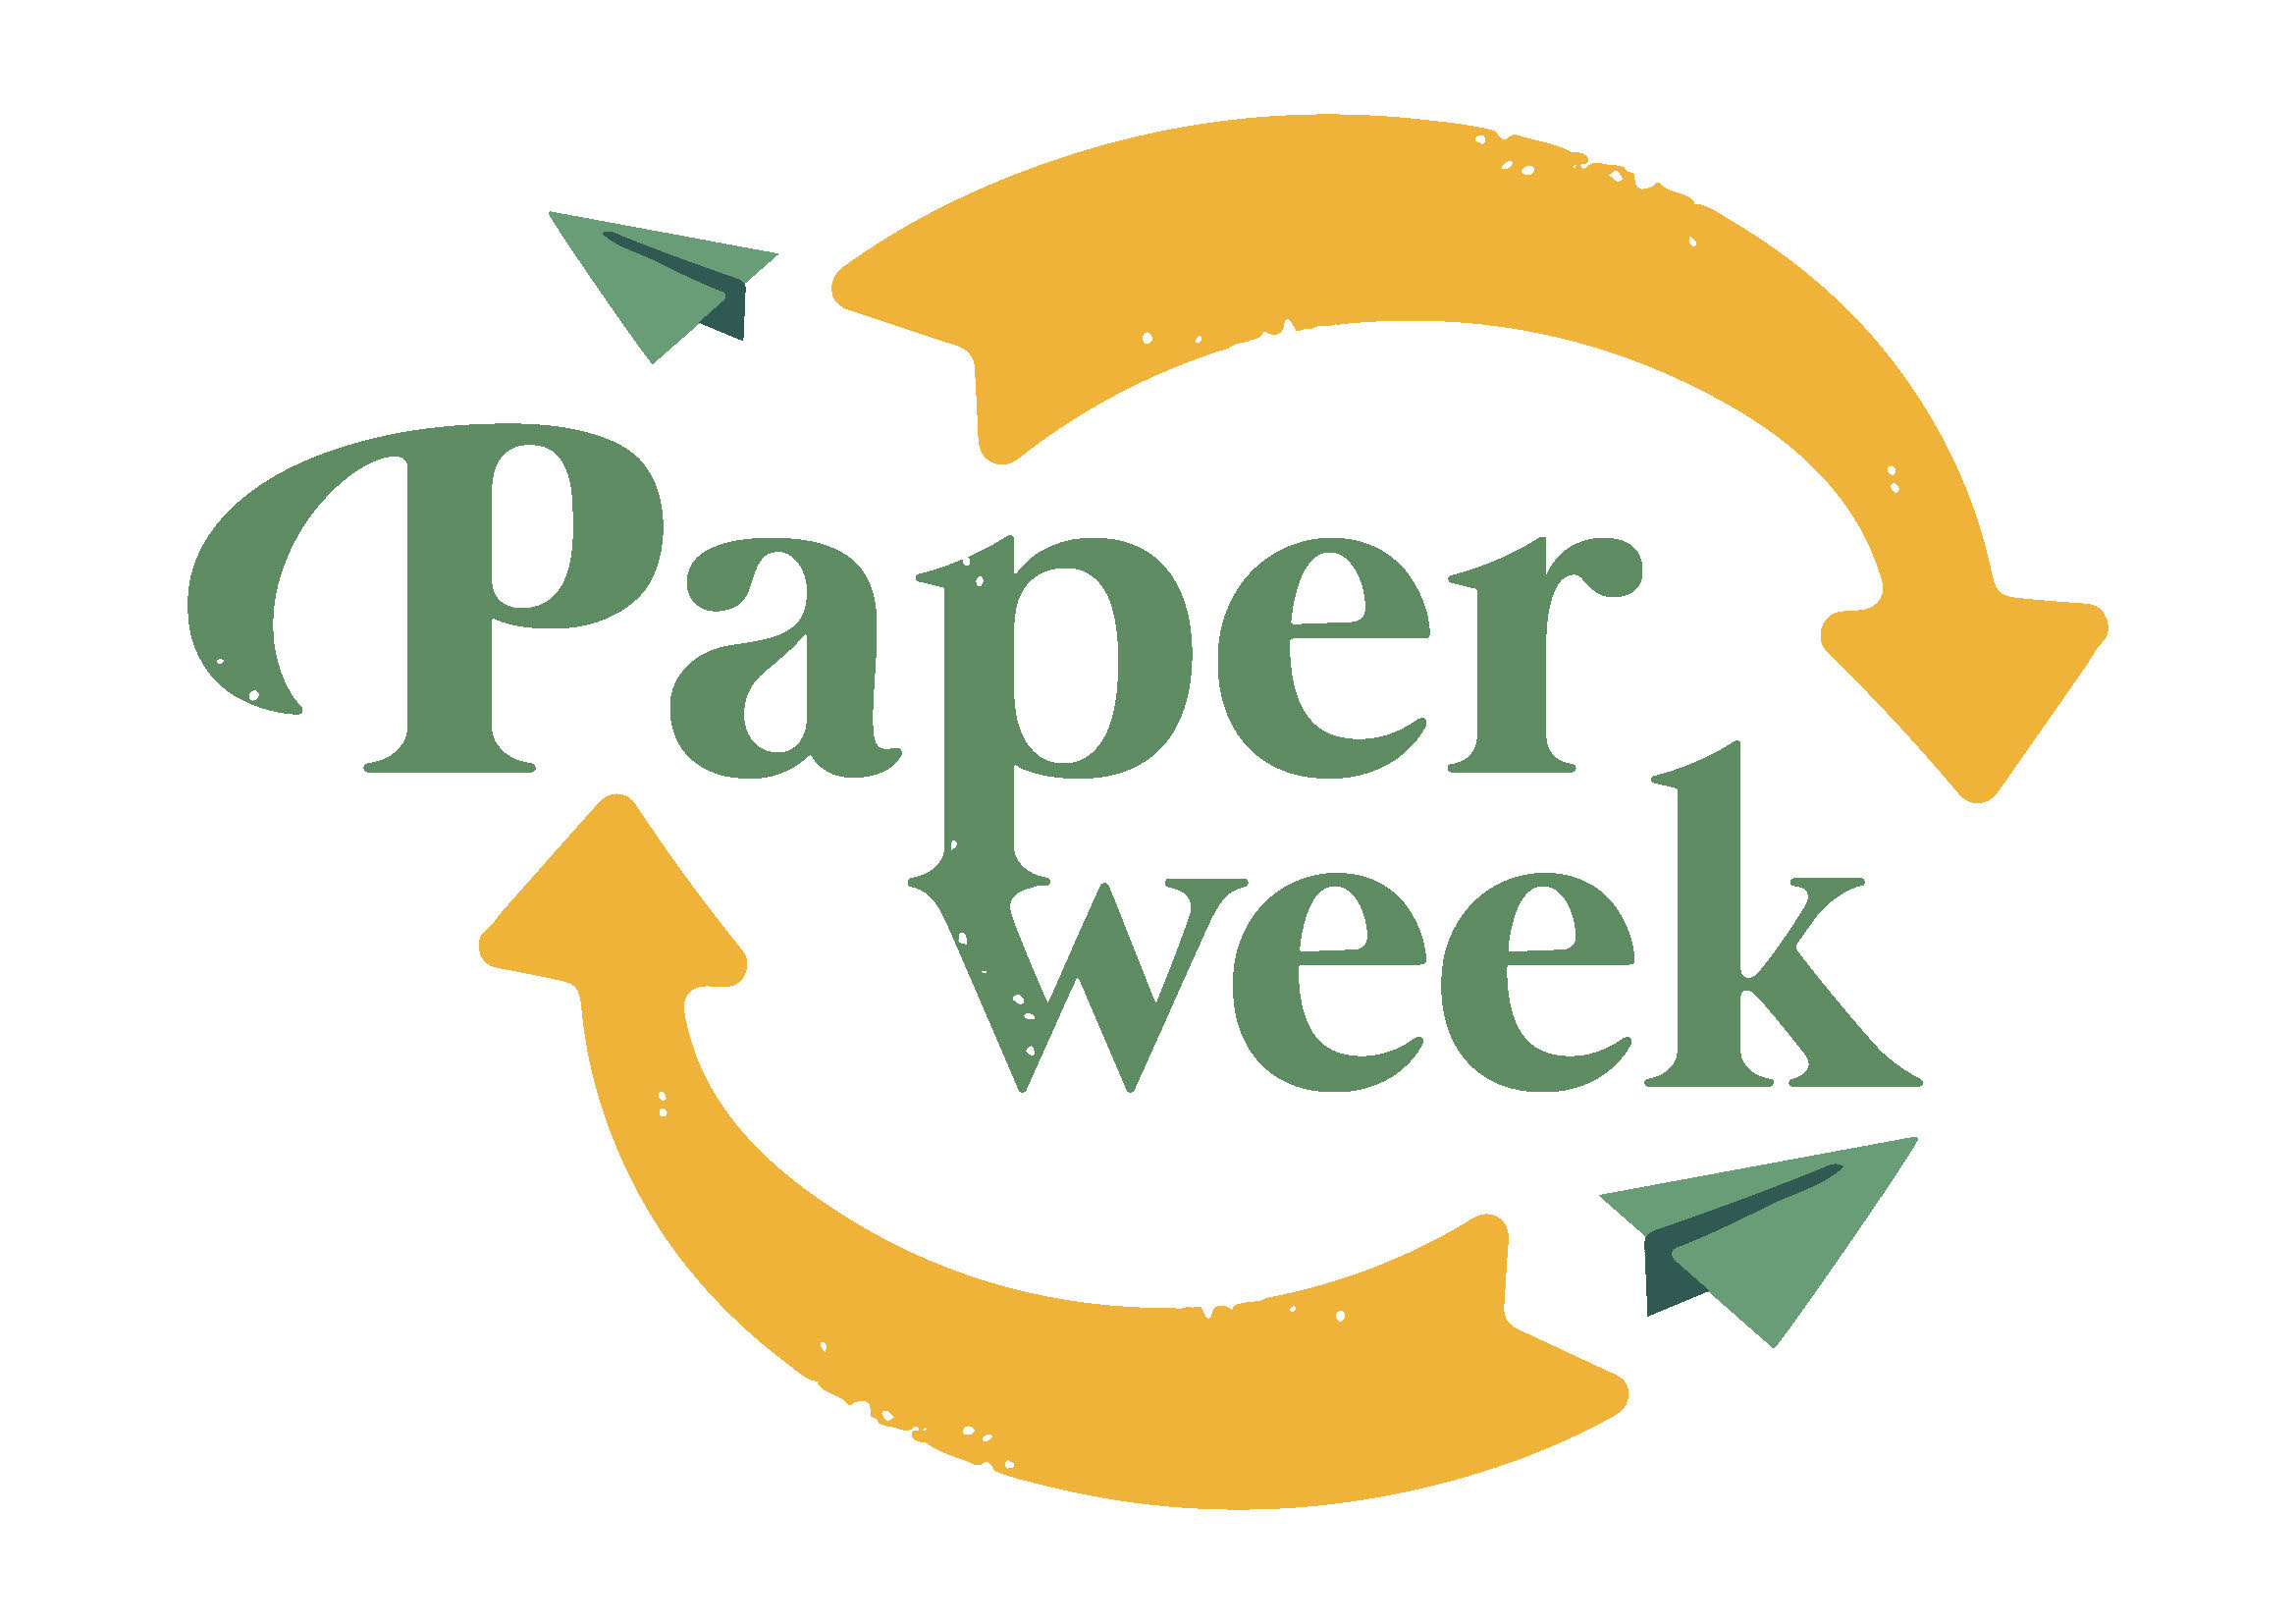 Oltre 500 studenti alessandrini alla "Paper week"